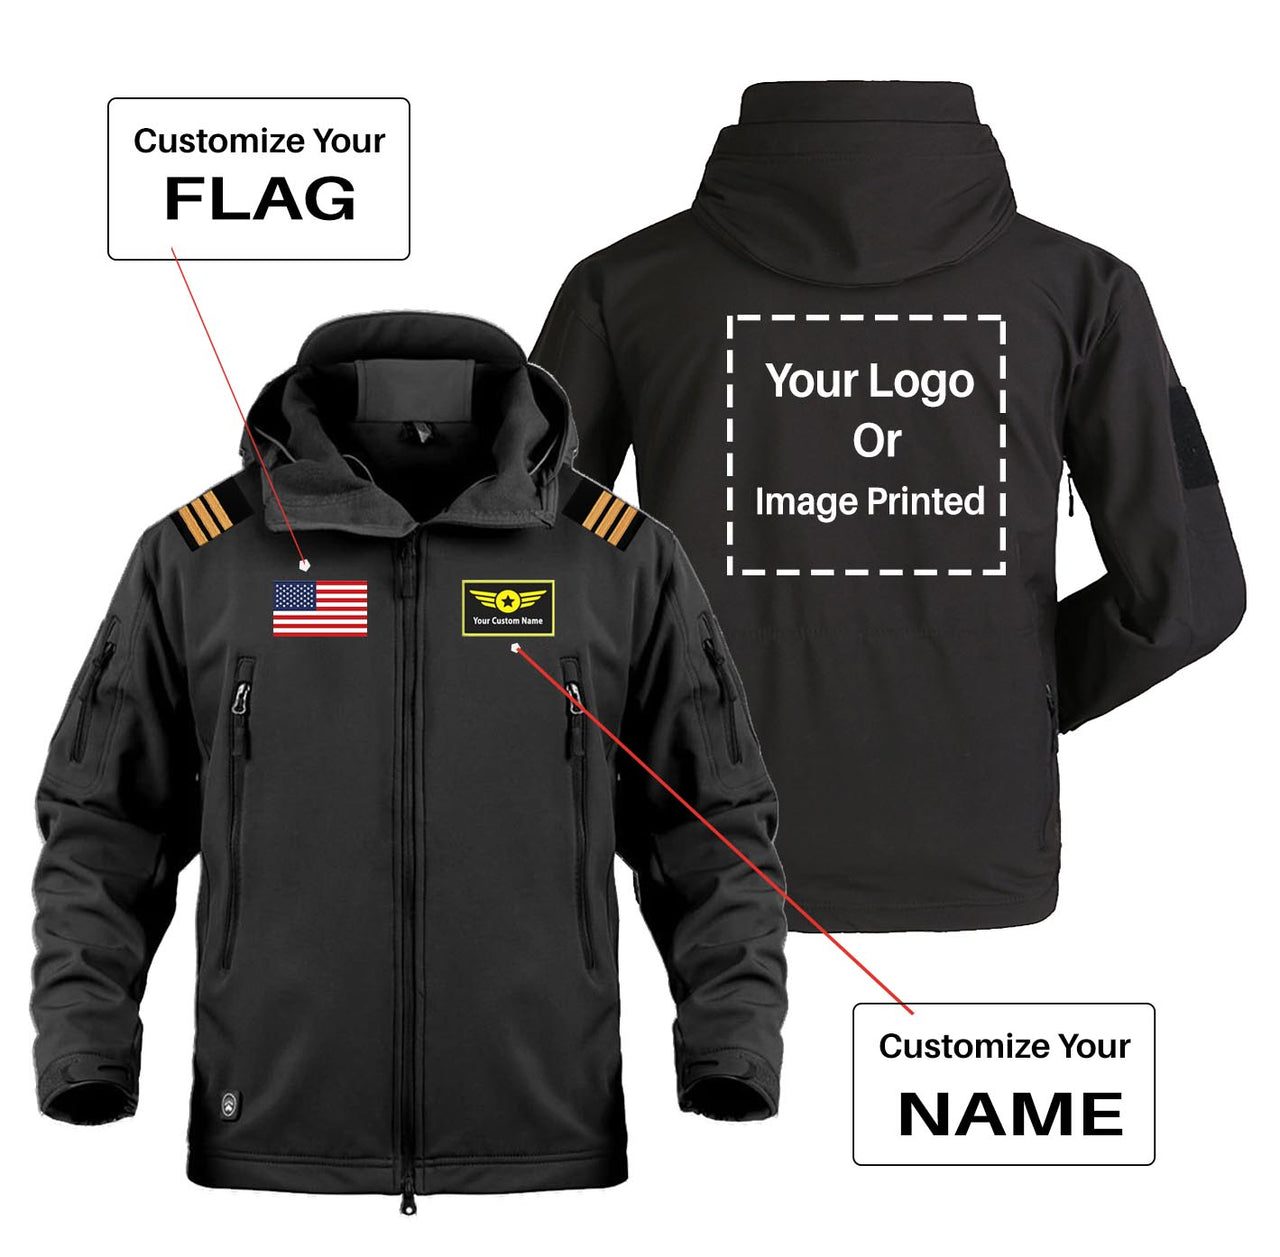 Custom Flag & Name & LOGO with EPAULETTES Military Pilot Jackets